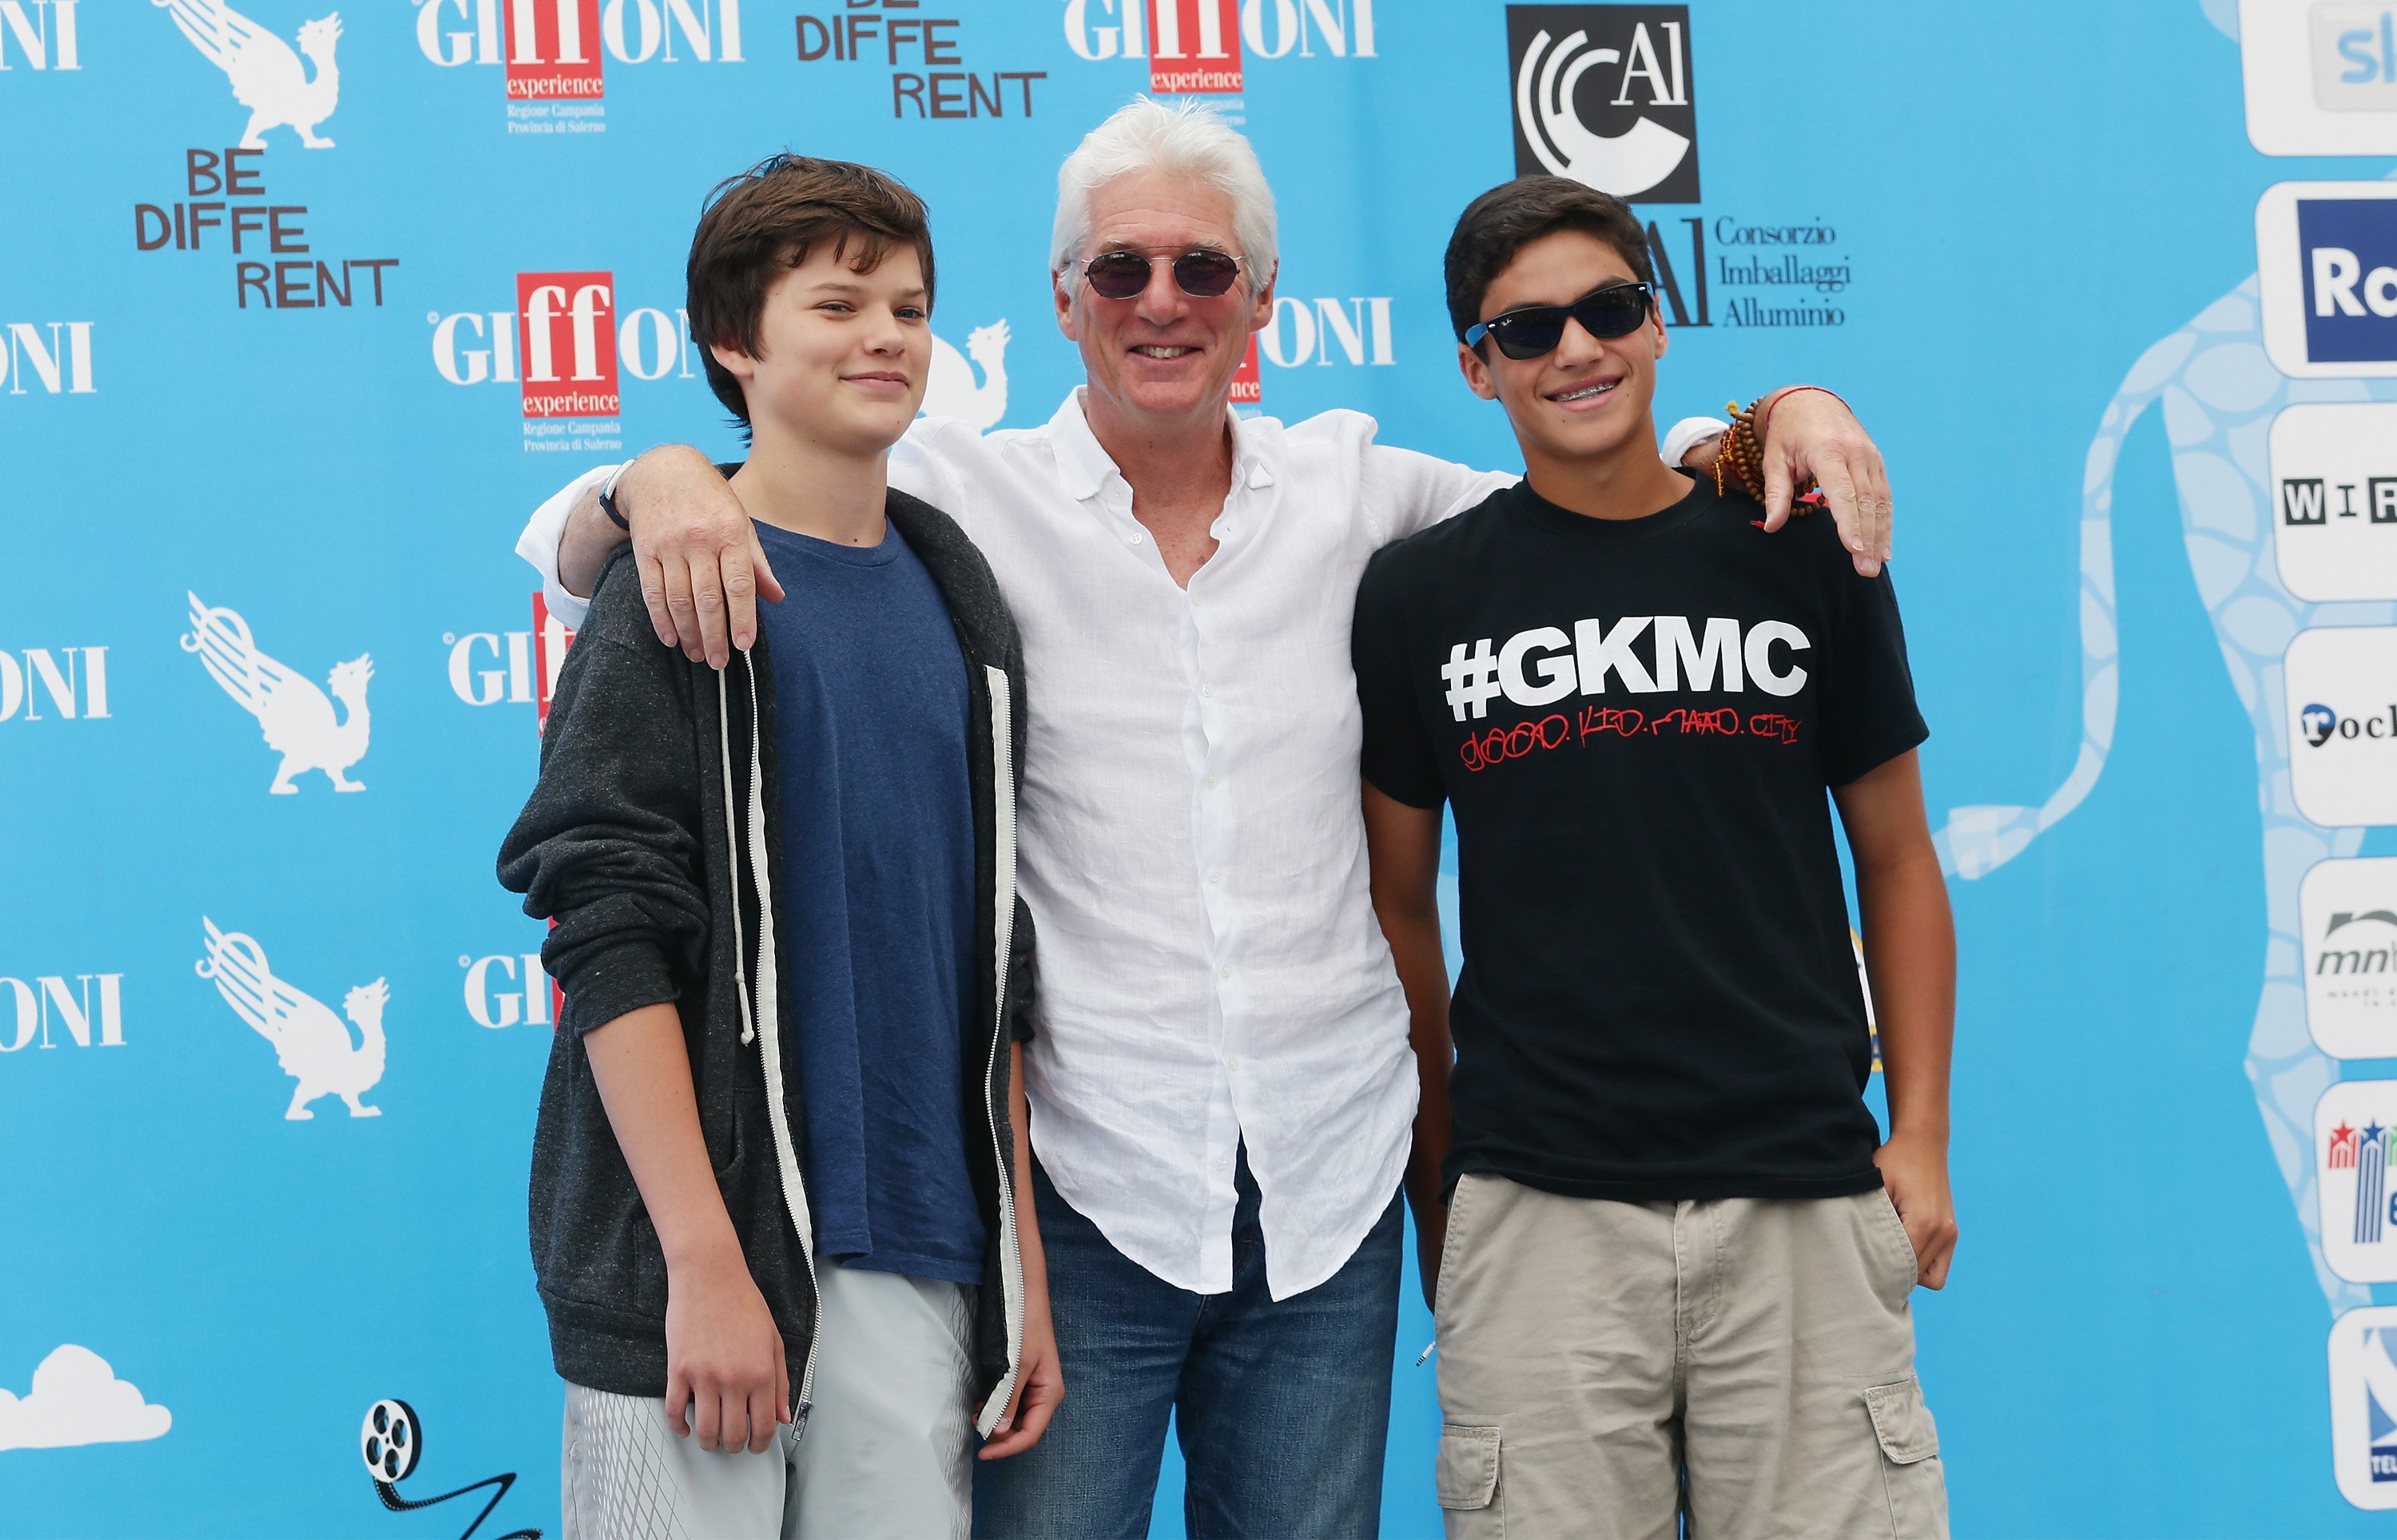 Richard Gere et son fils Homer et un neveu au festival du film de Giffoni en 2014 en Italie. | Source : Getty Images